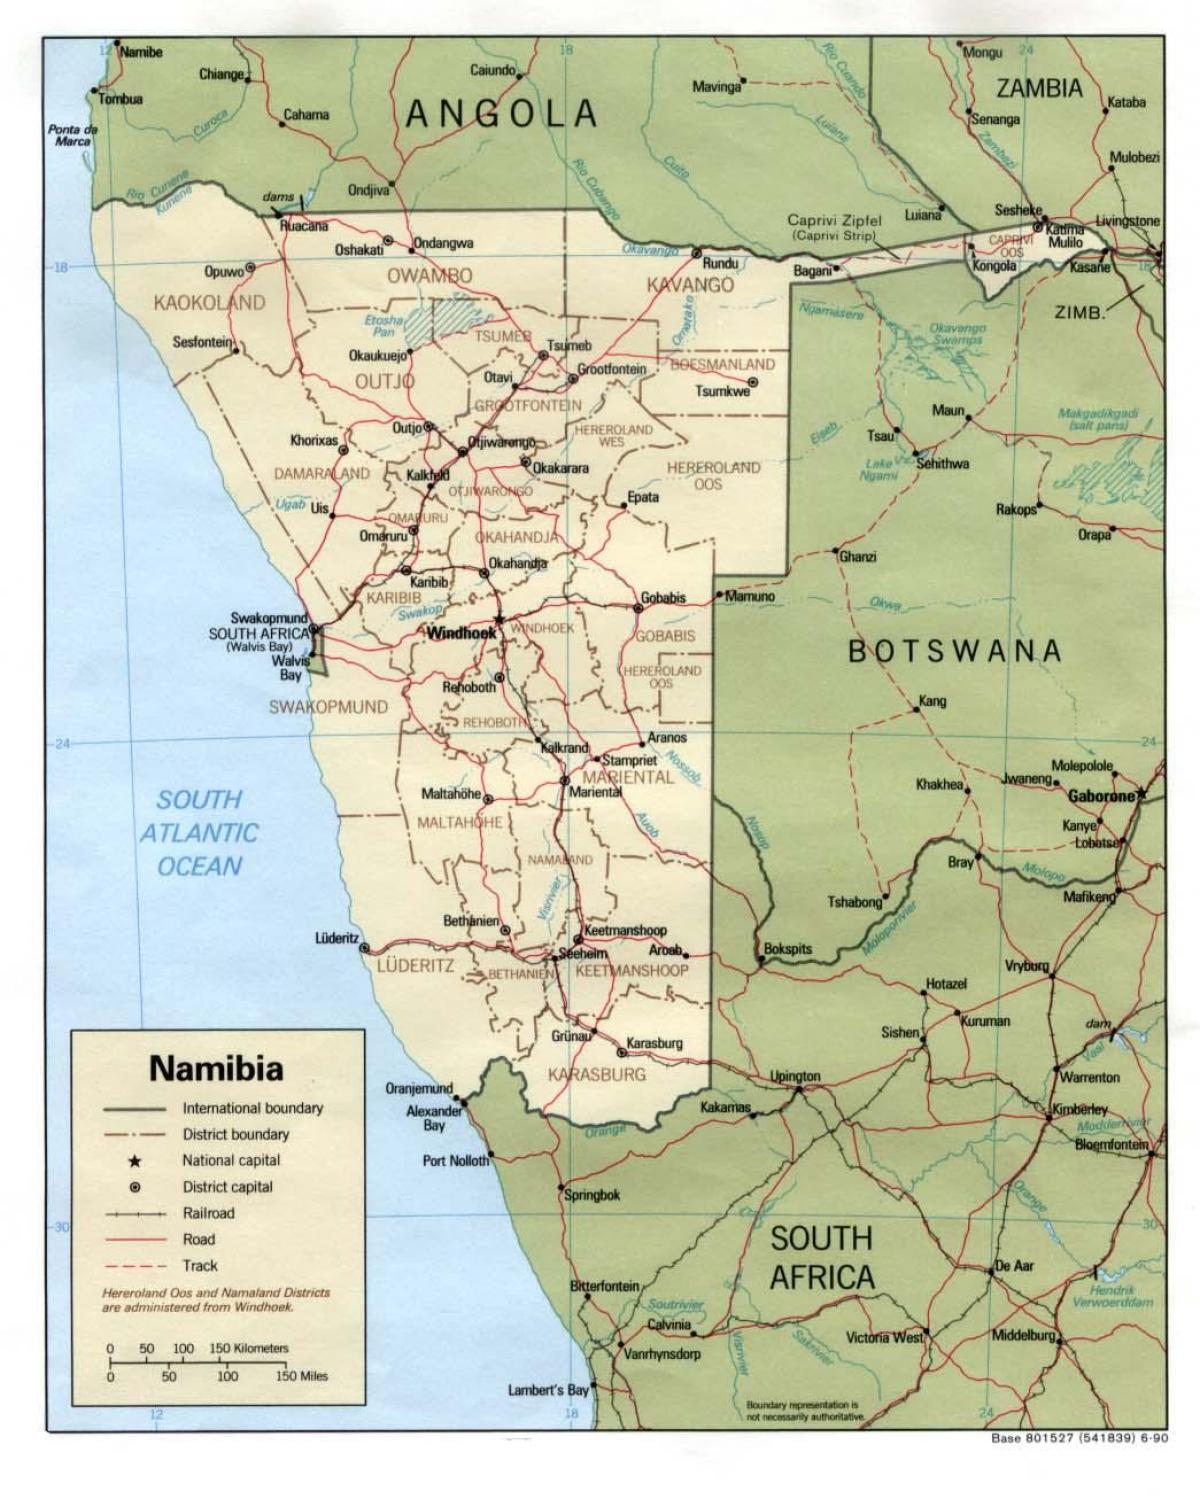 نامیبیا و با نقشه تمام شهرهای